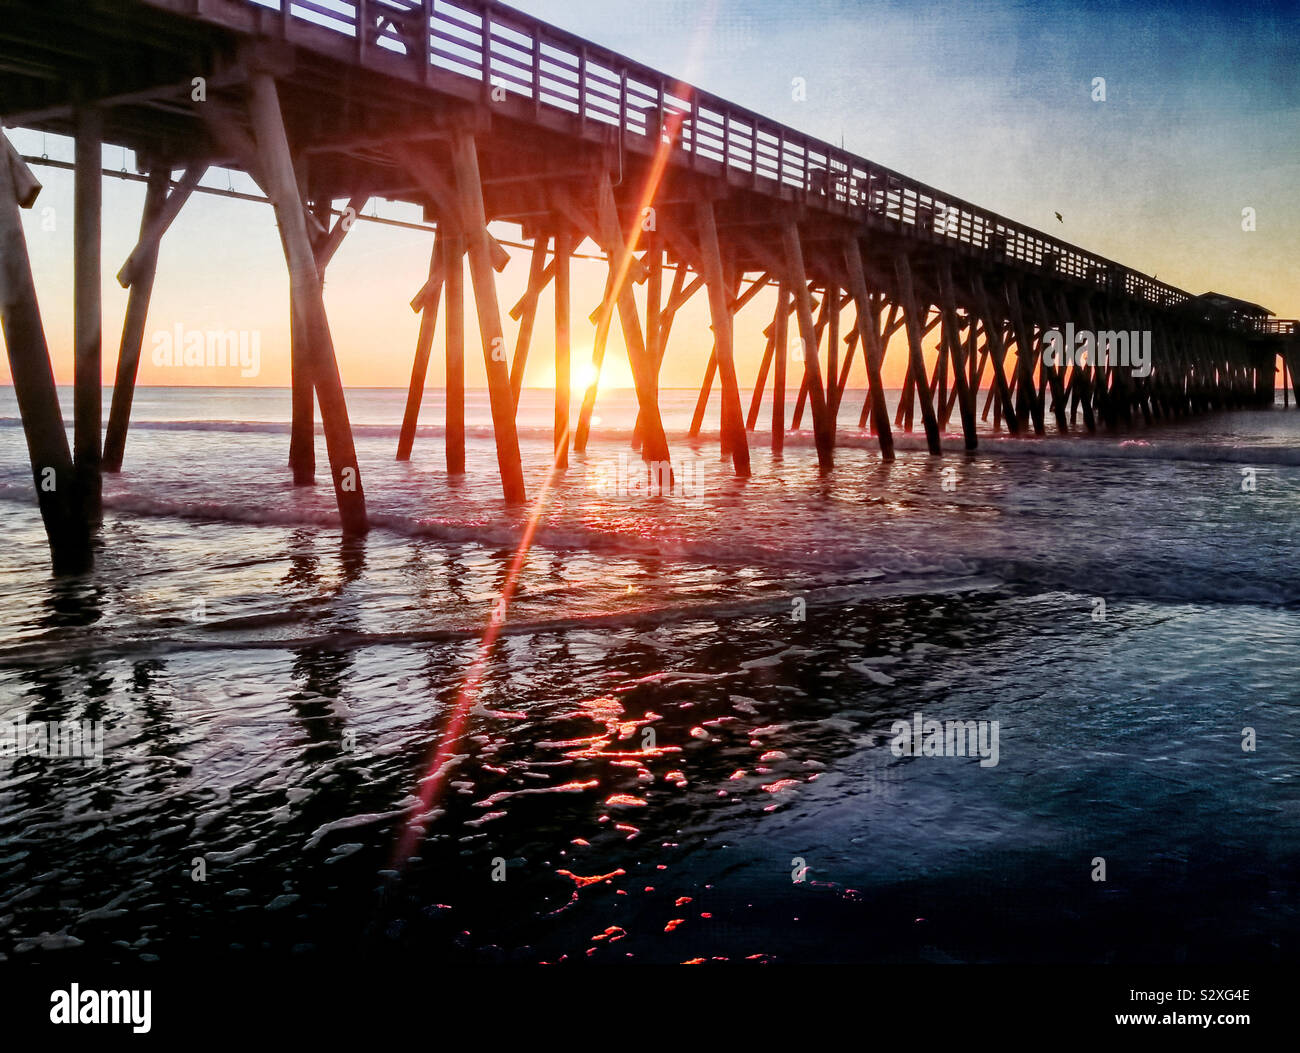 Amanecer detrás de un muelle en Myrtle Beach, Carolina del Sur. El brillante destello de lente desde el sol naciente crea interés visual. Foto de stock